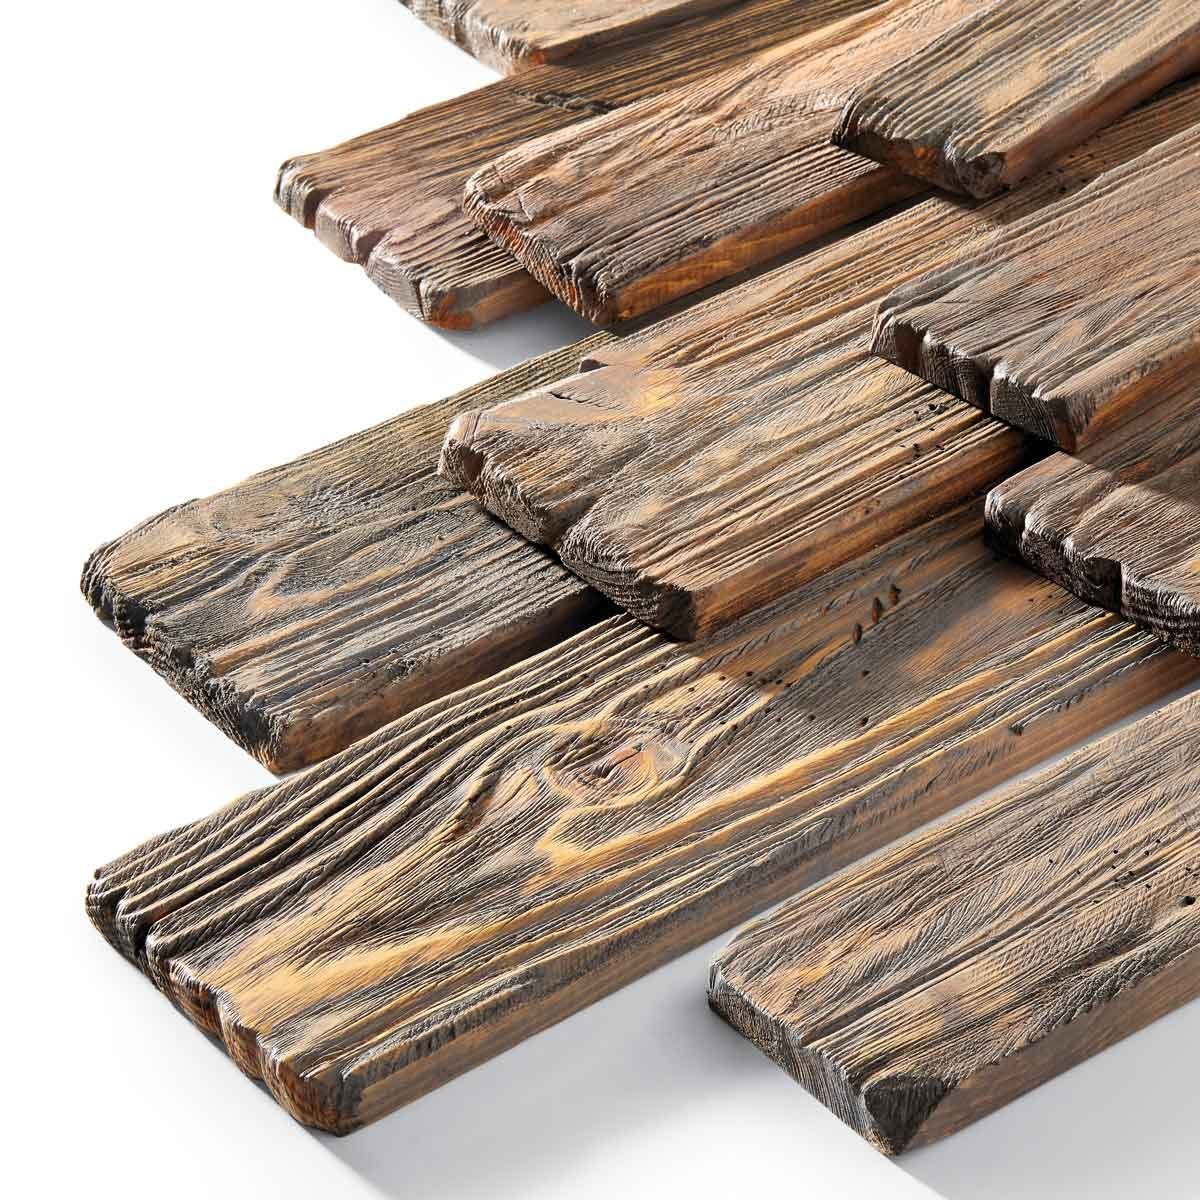 How To Make Wood Look Like Metal - Rustic Crafts & DIY